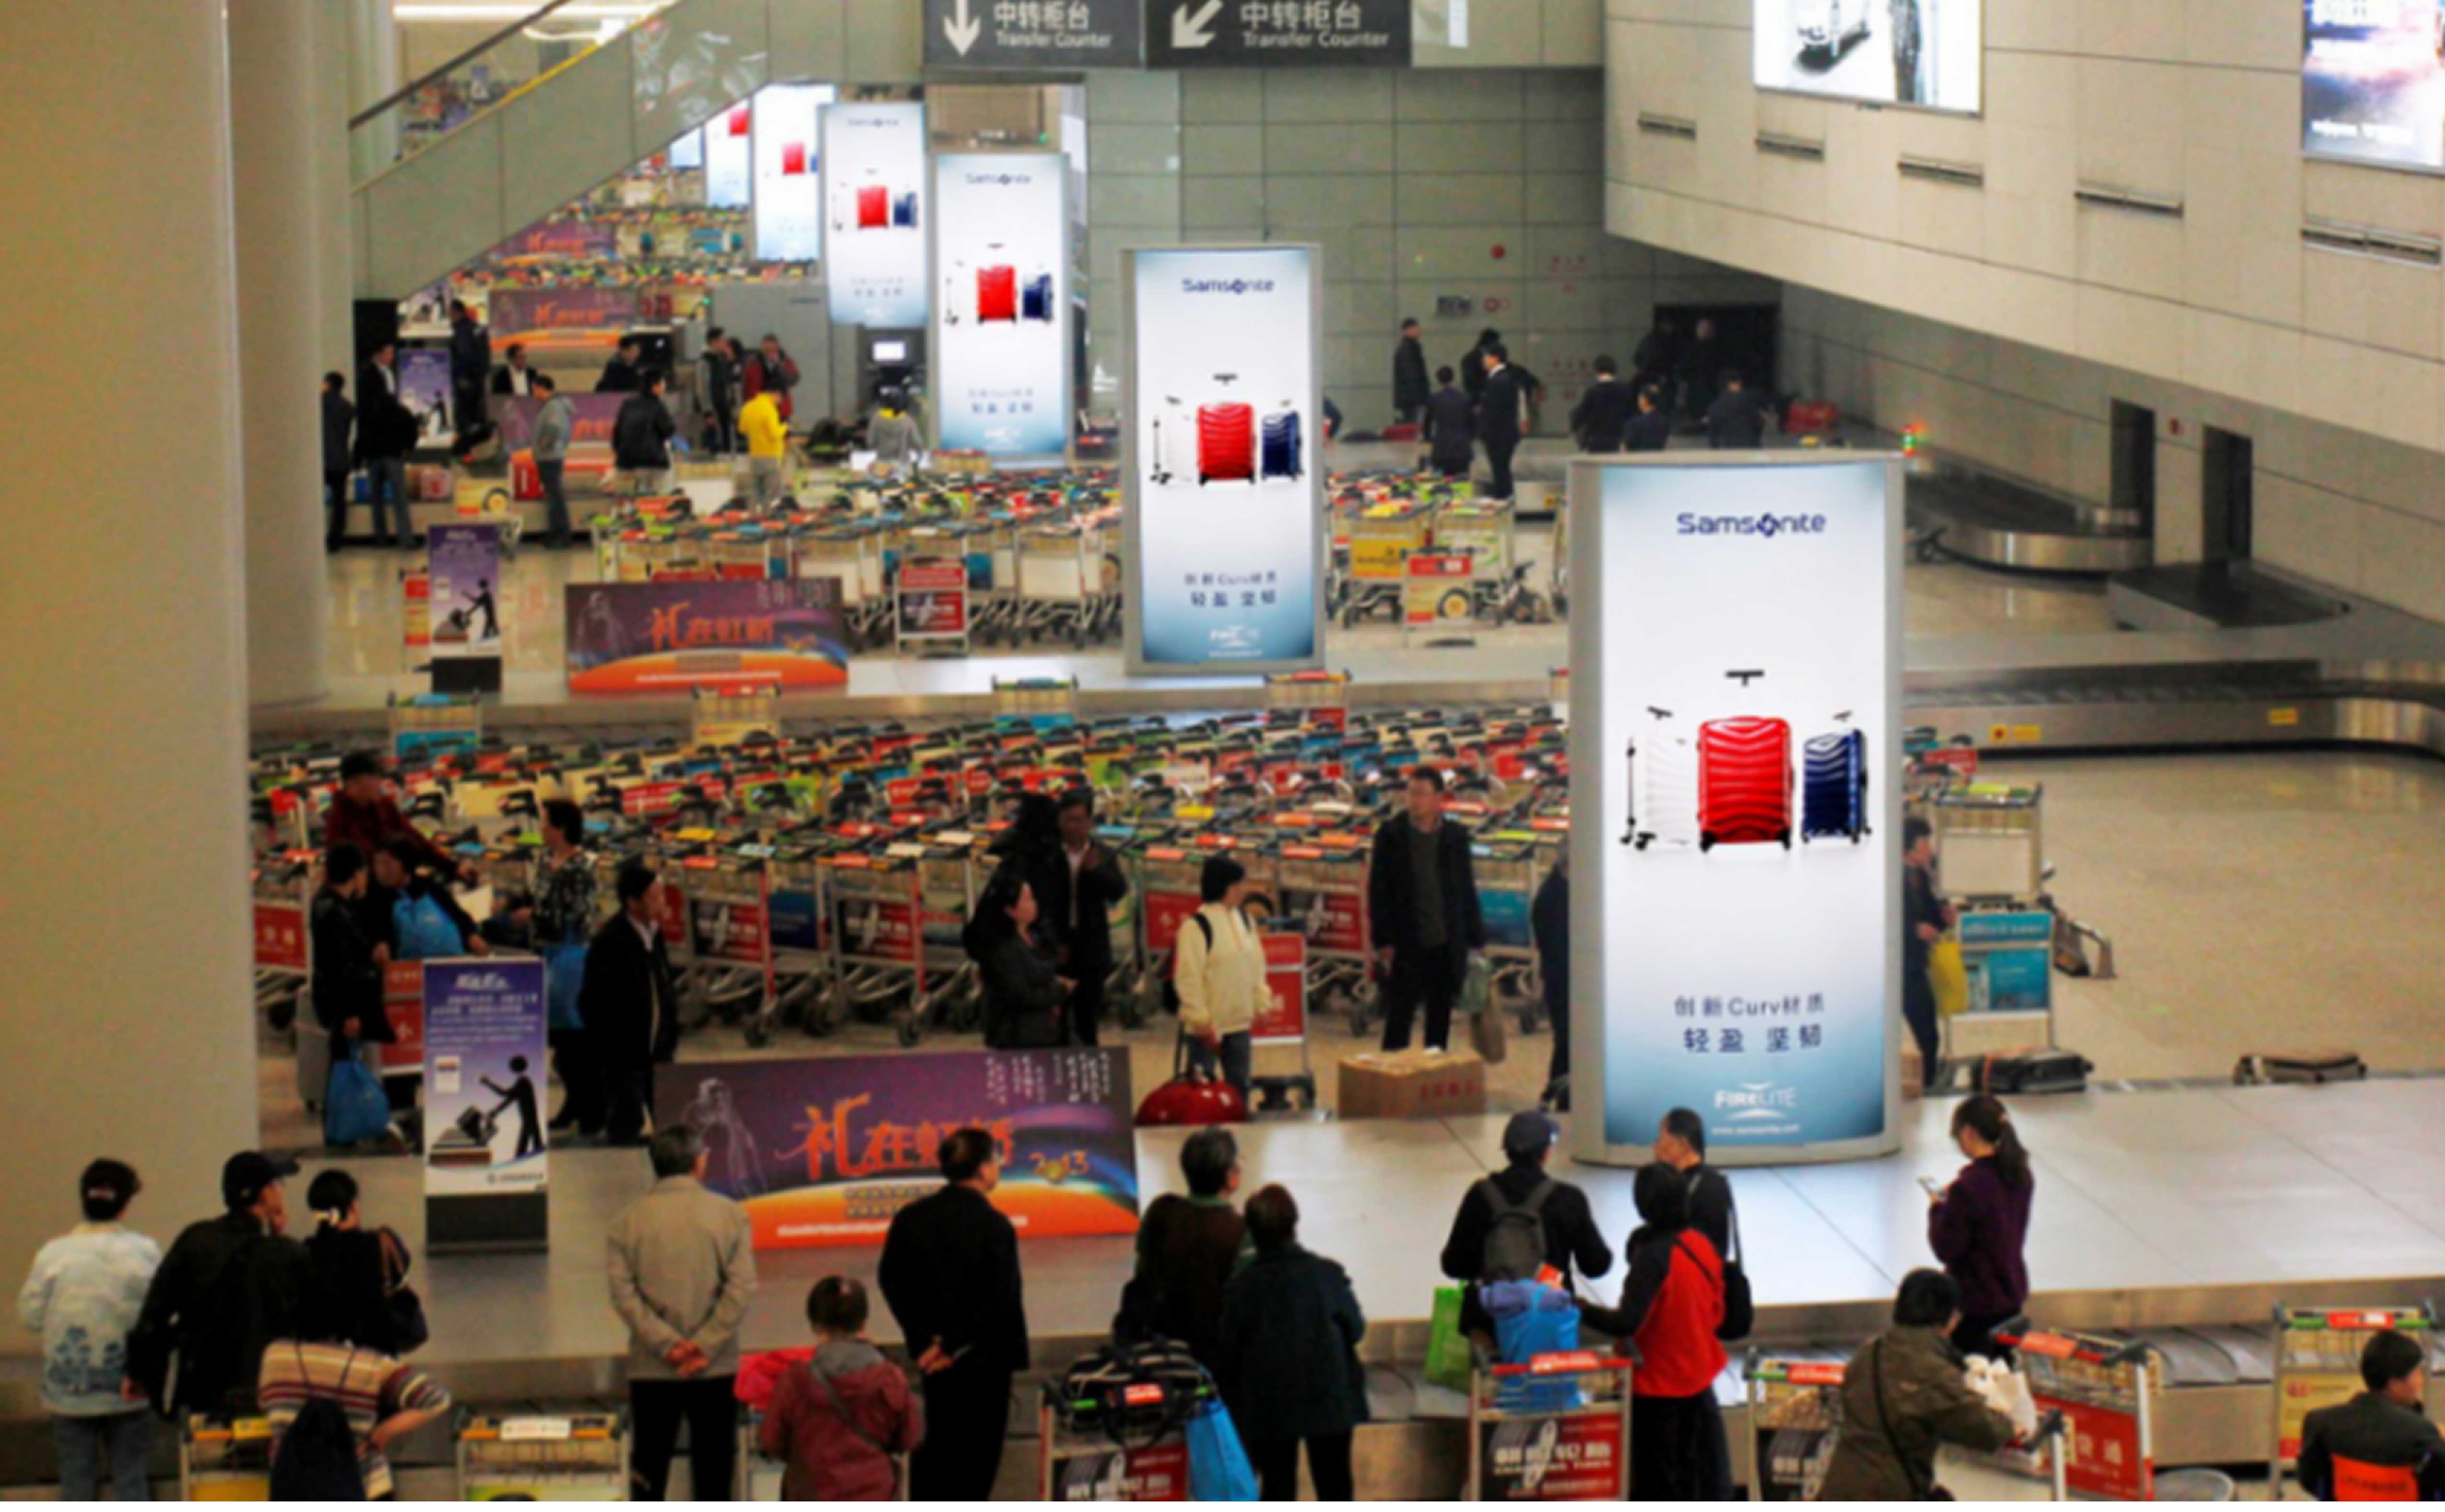 上海机场广告-虹桥T2到达行李提取大厅图腾